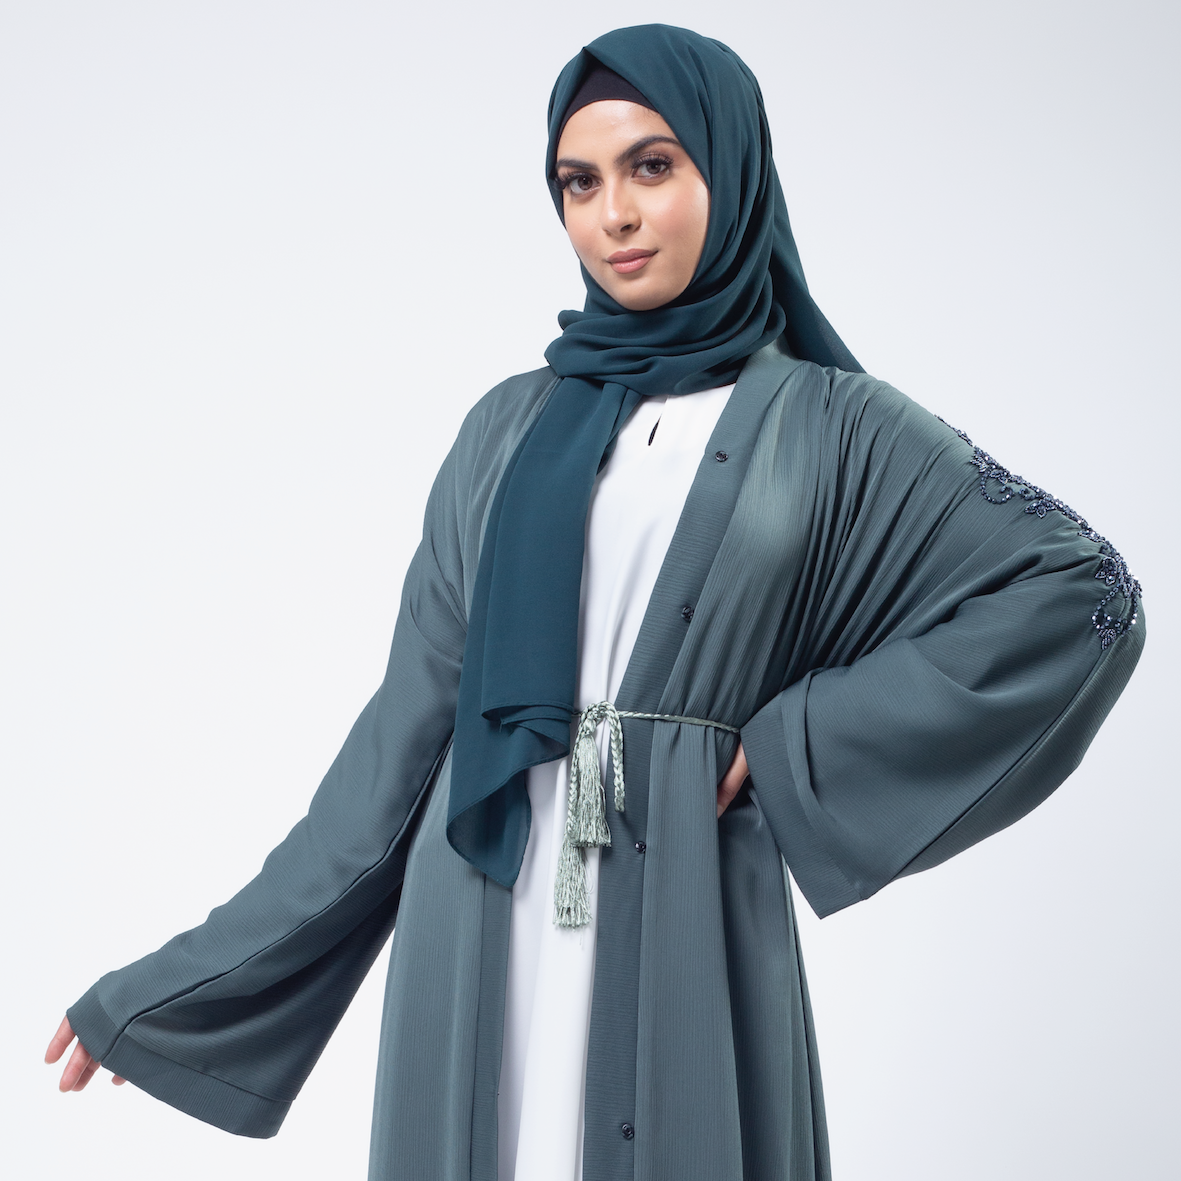 Anaqa Inspired Abayas: Simple, Modest, Elegant